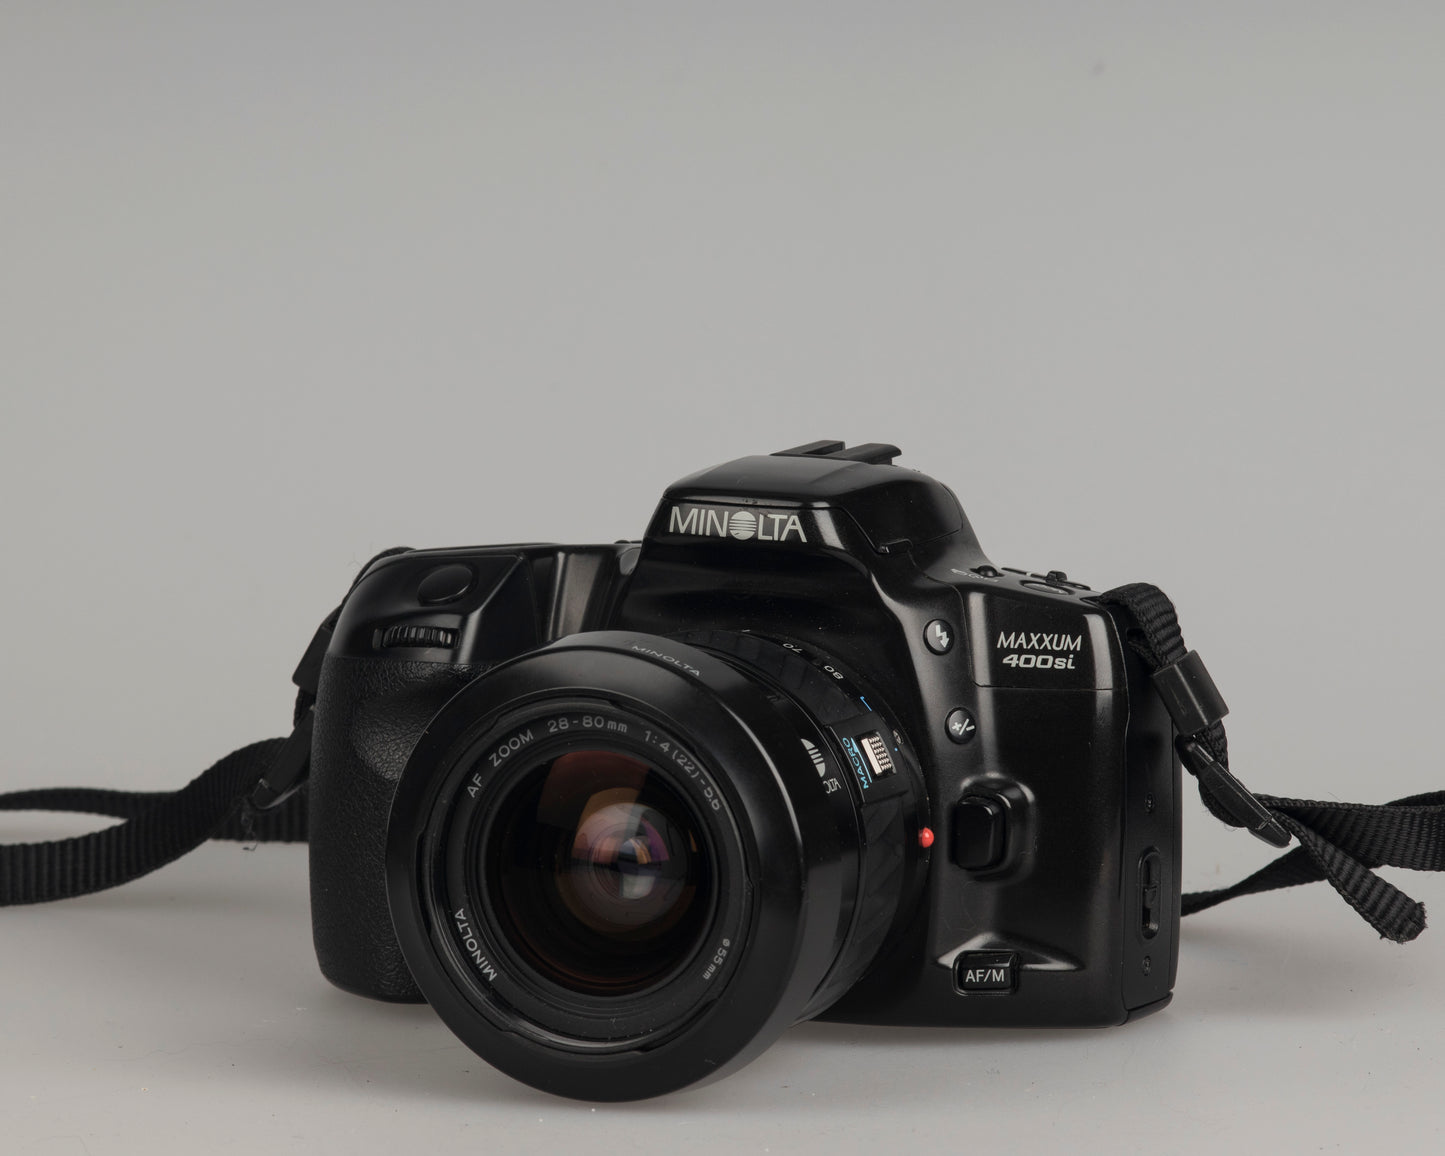 Minolta Maxxum 400si 35mm film SLR camera featuring a 28-80mm lens; front view